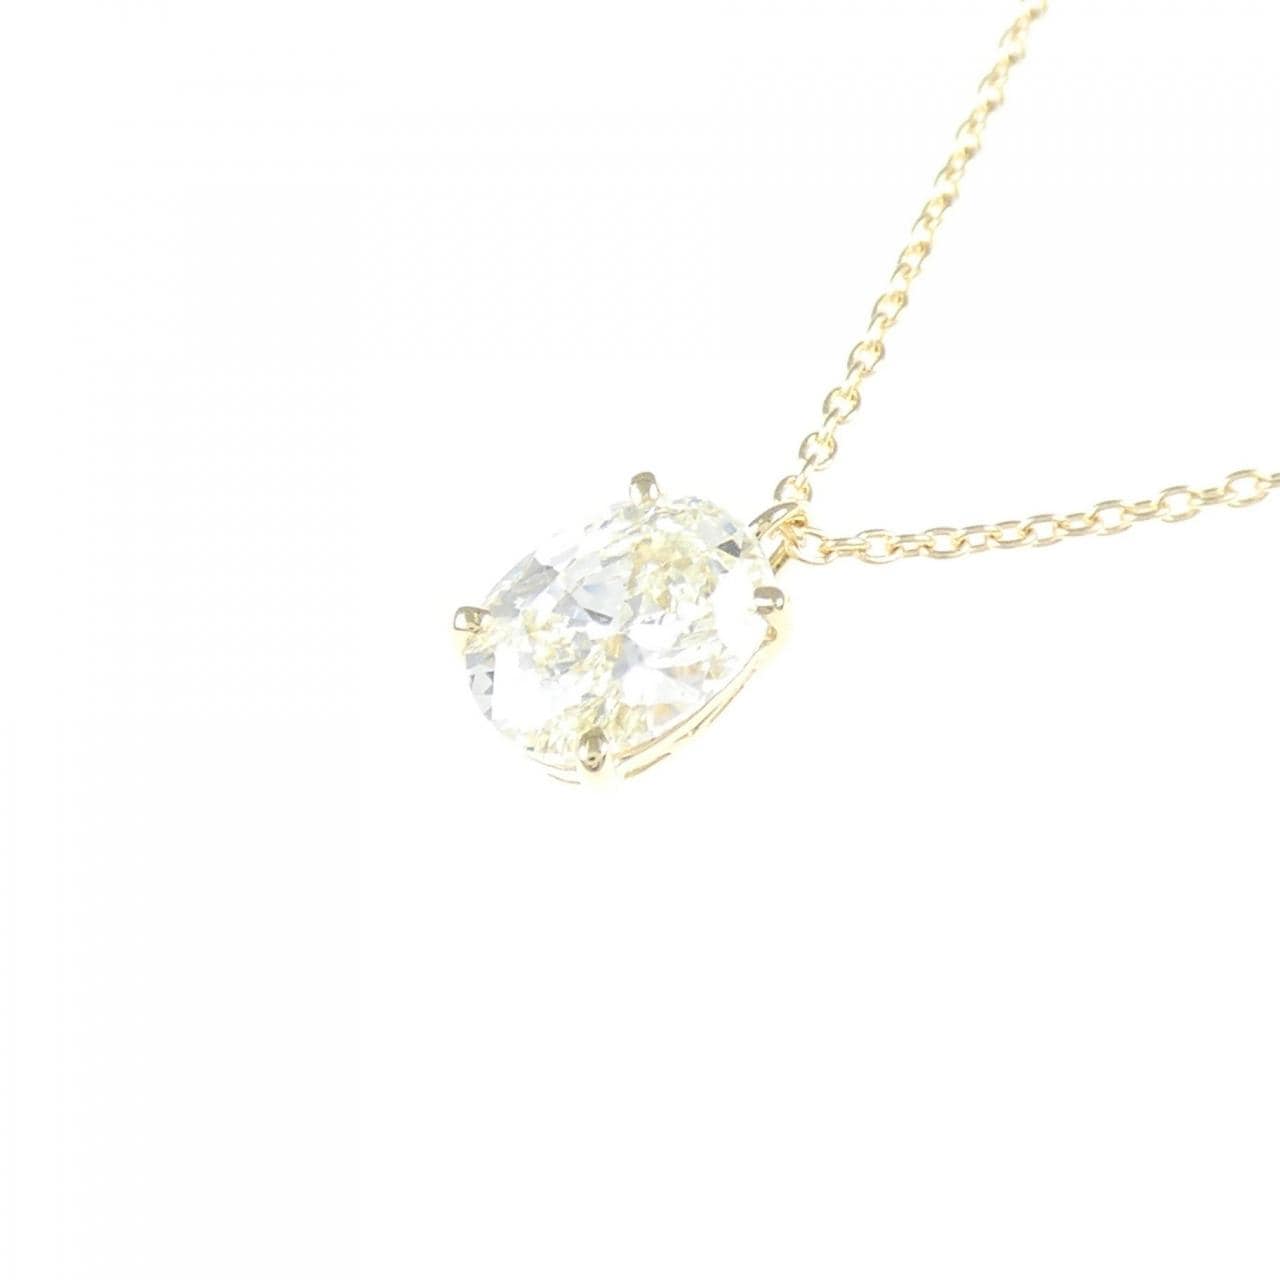 [Remake] K18YG Diamond Necklace 1.021CT M VS2 Oval Cut